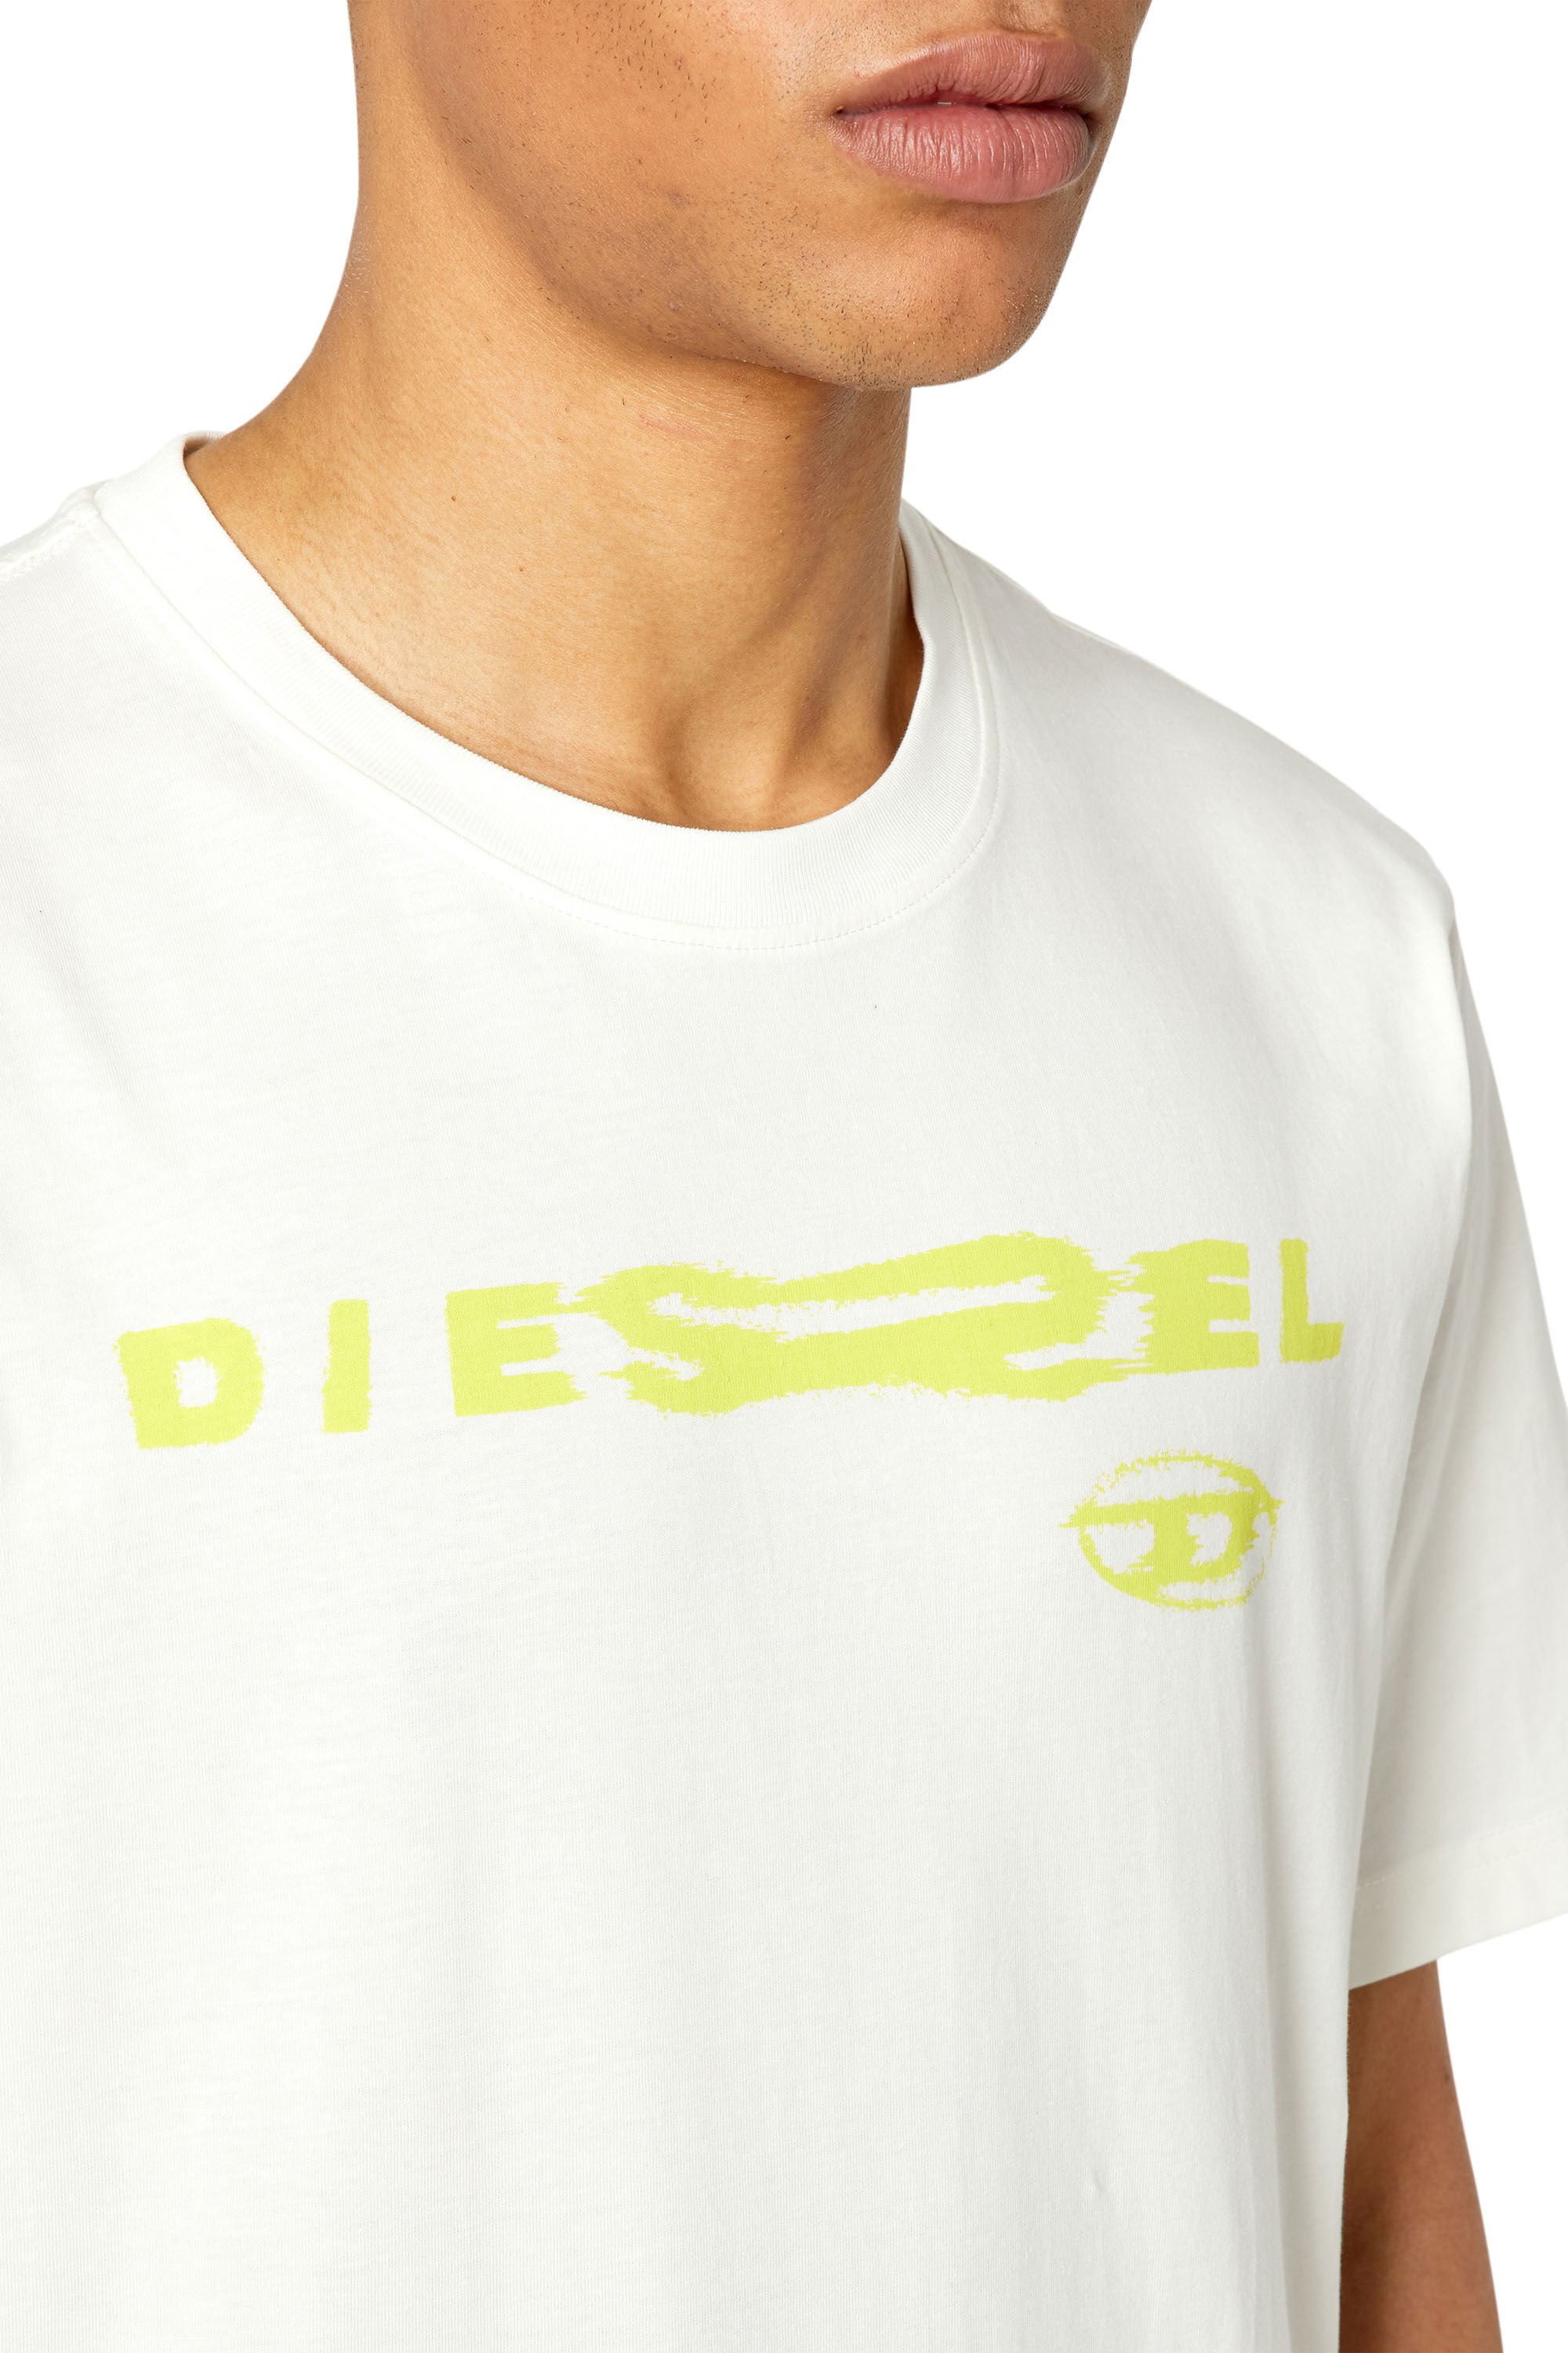 Diesel - T-JUST-G9,  - Image 4